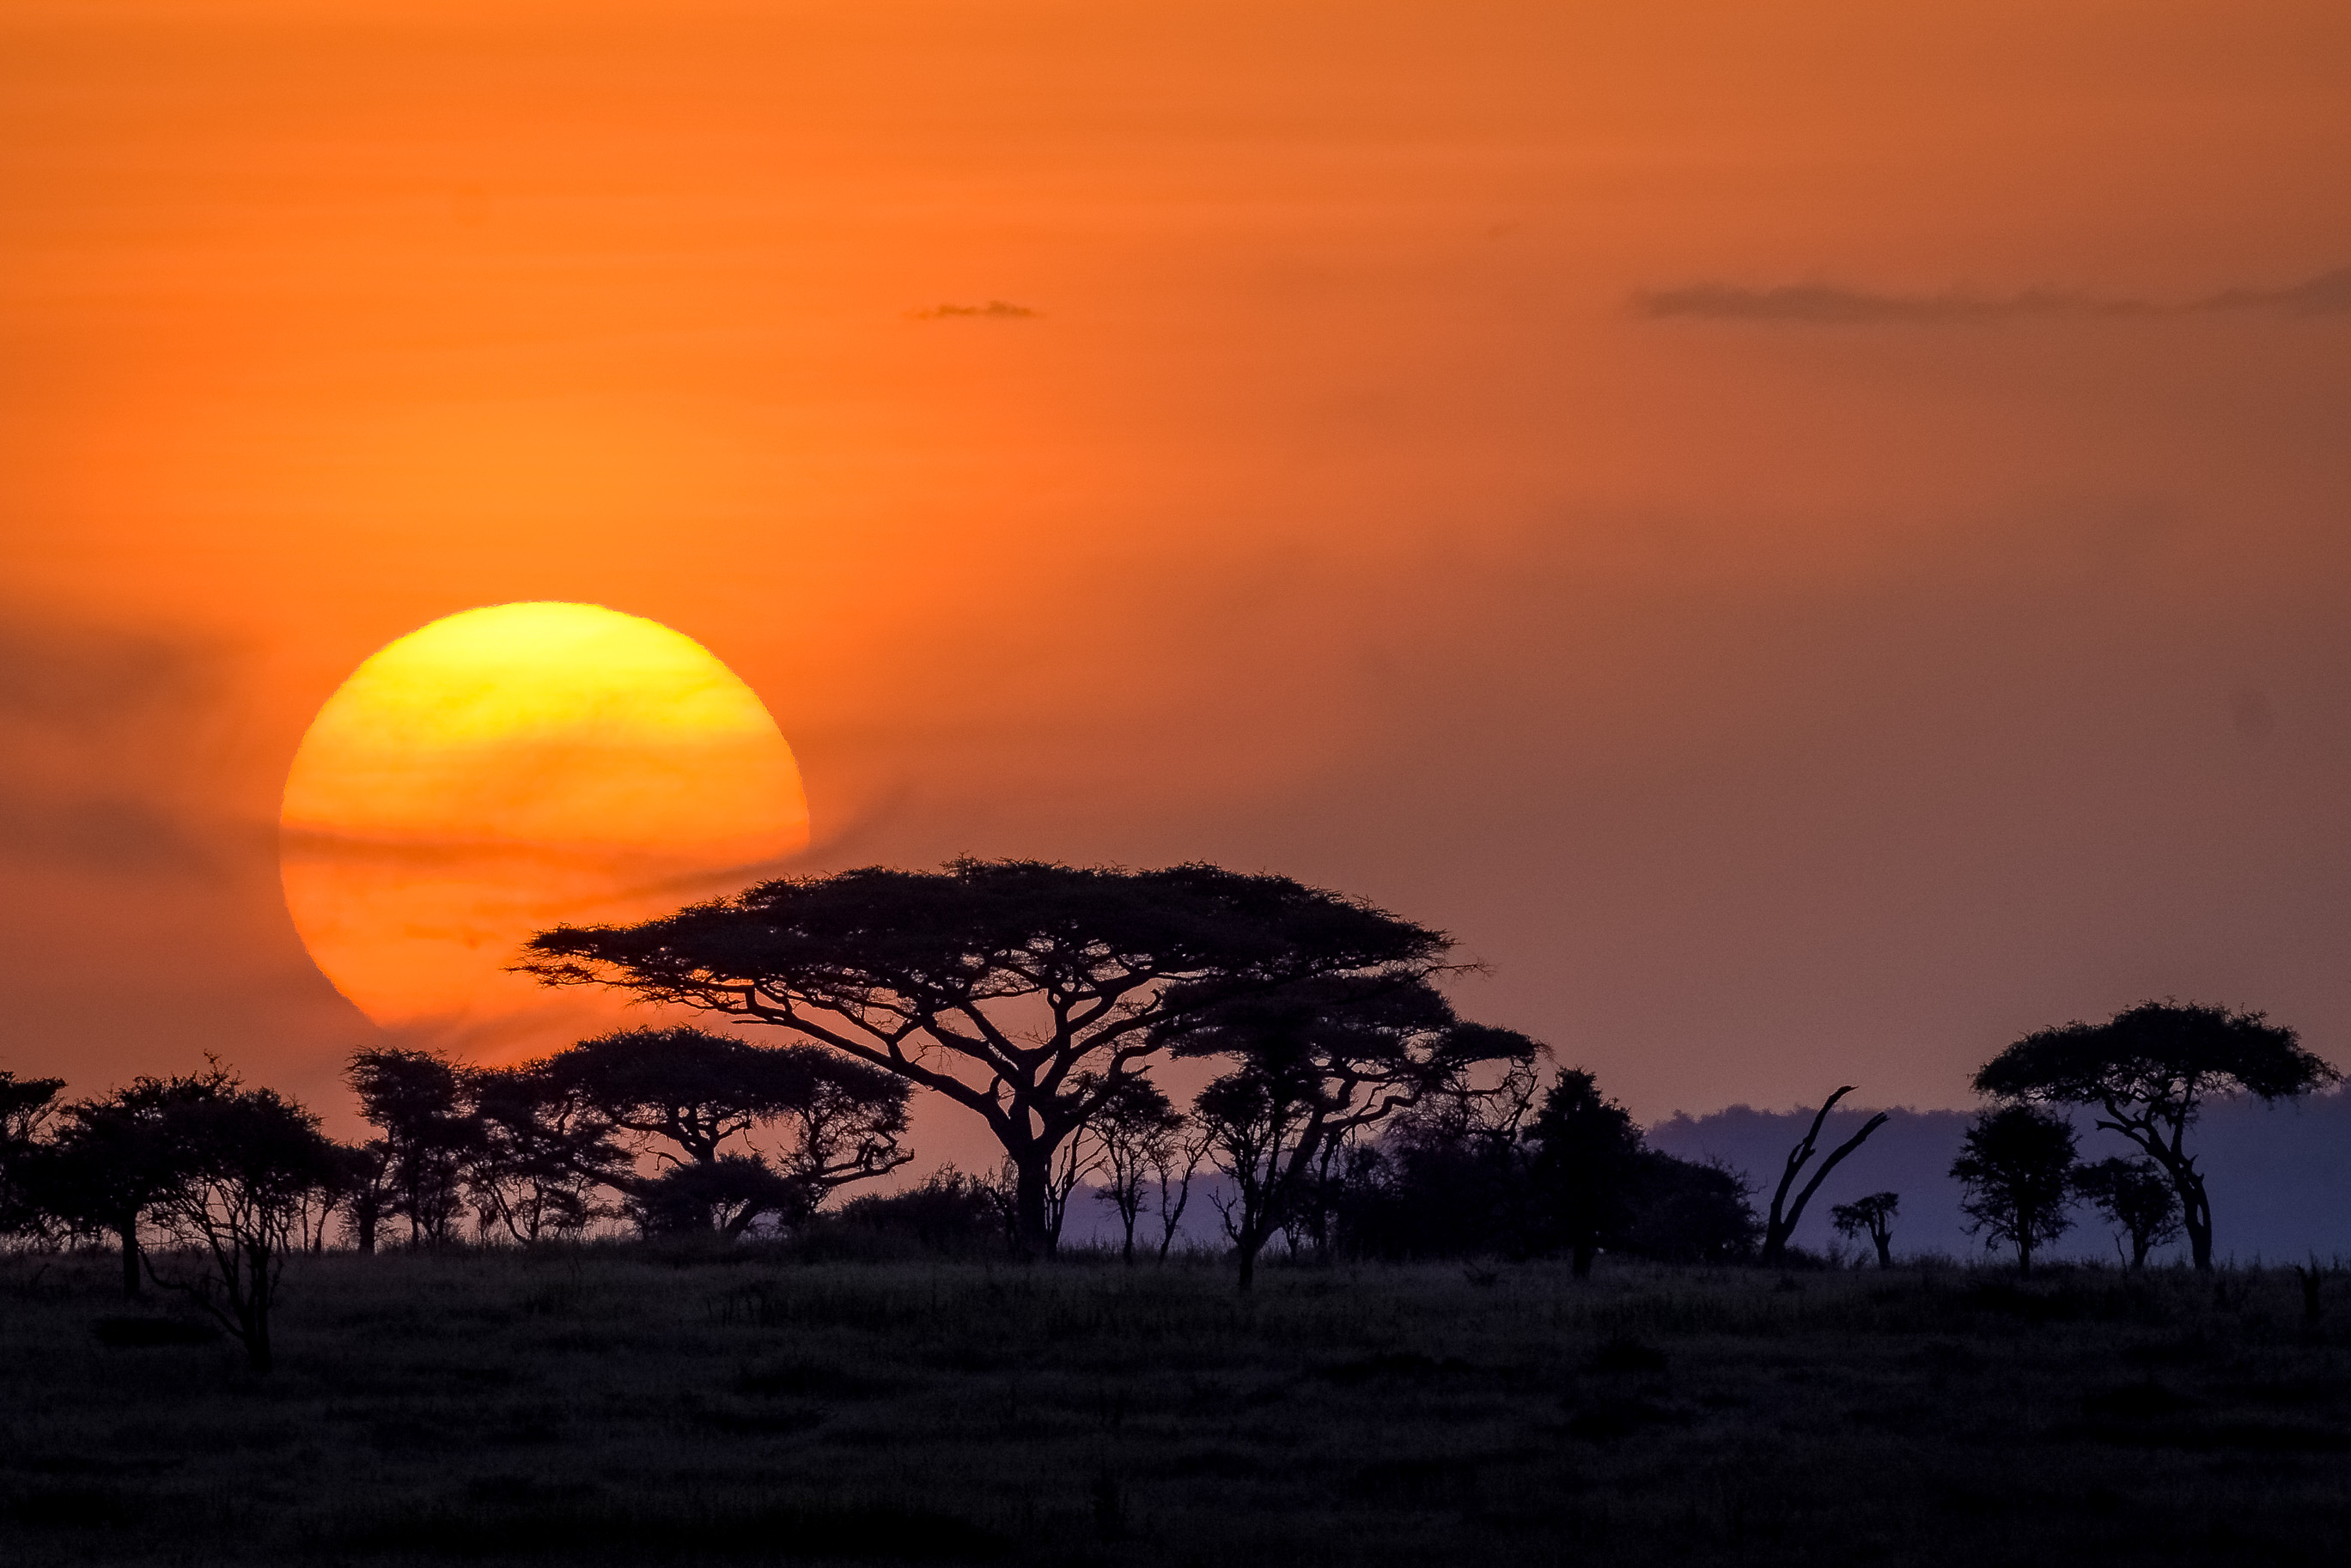 Serengeti sunset photo